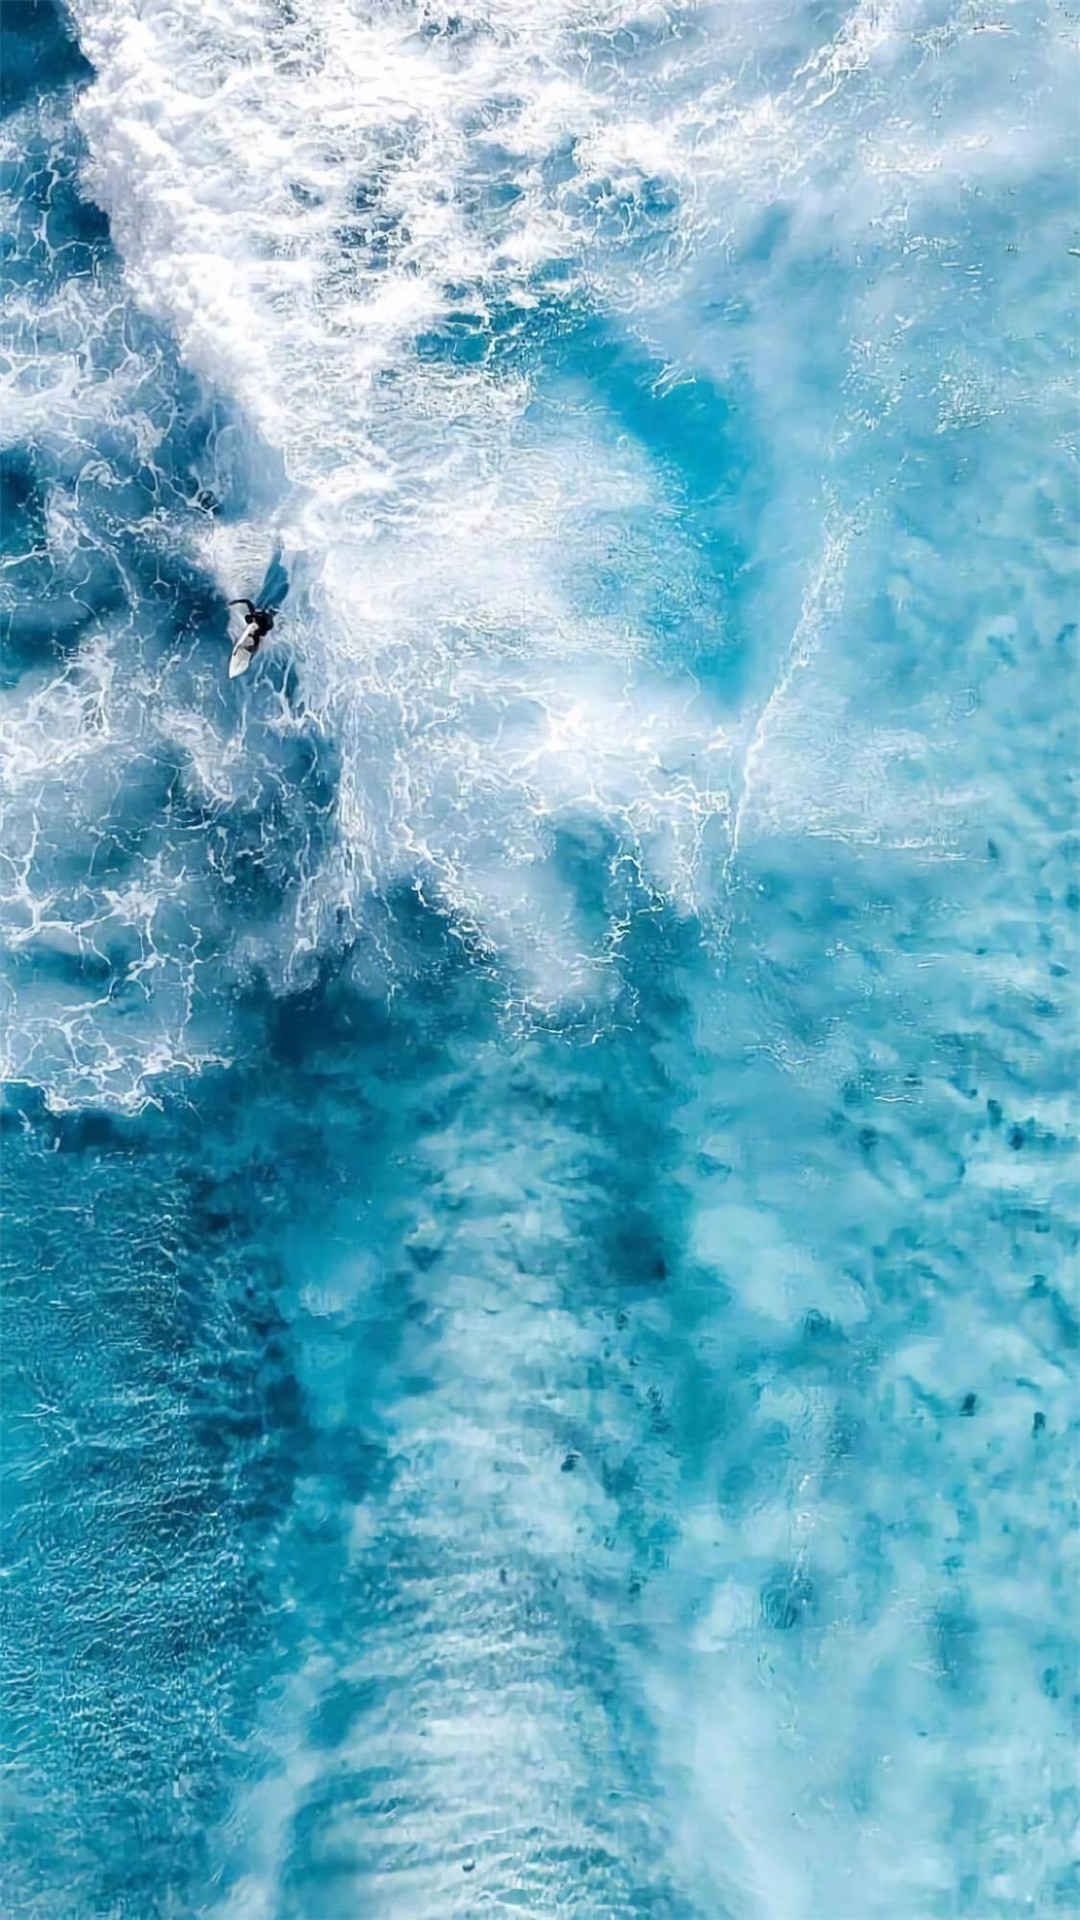 蓝色系海洋风景唯美高清手机壁纸